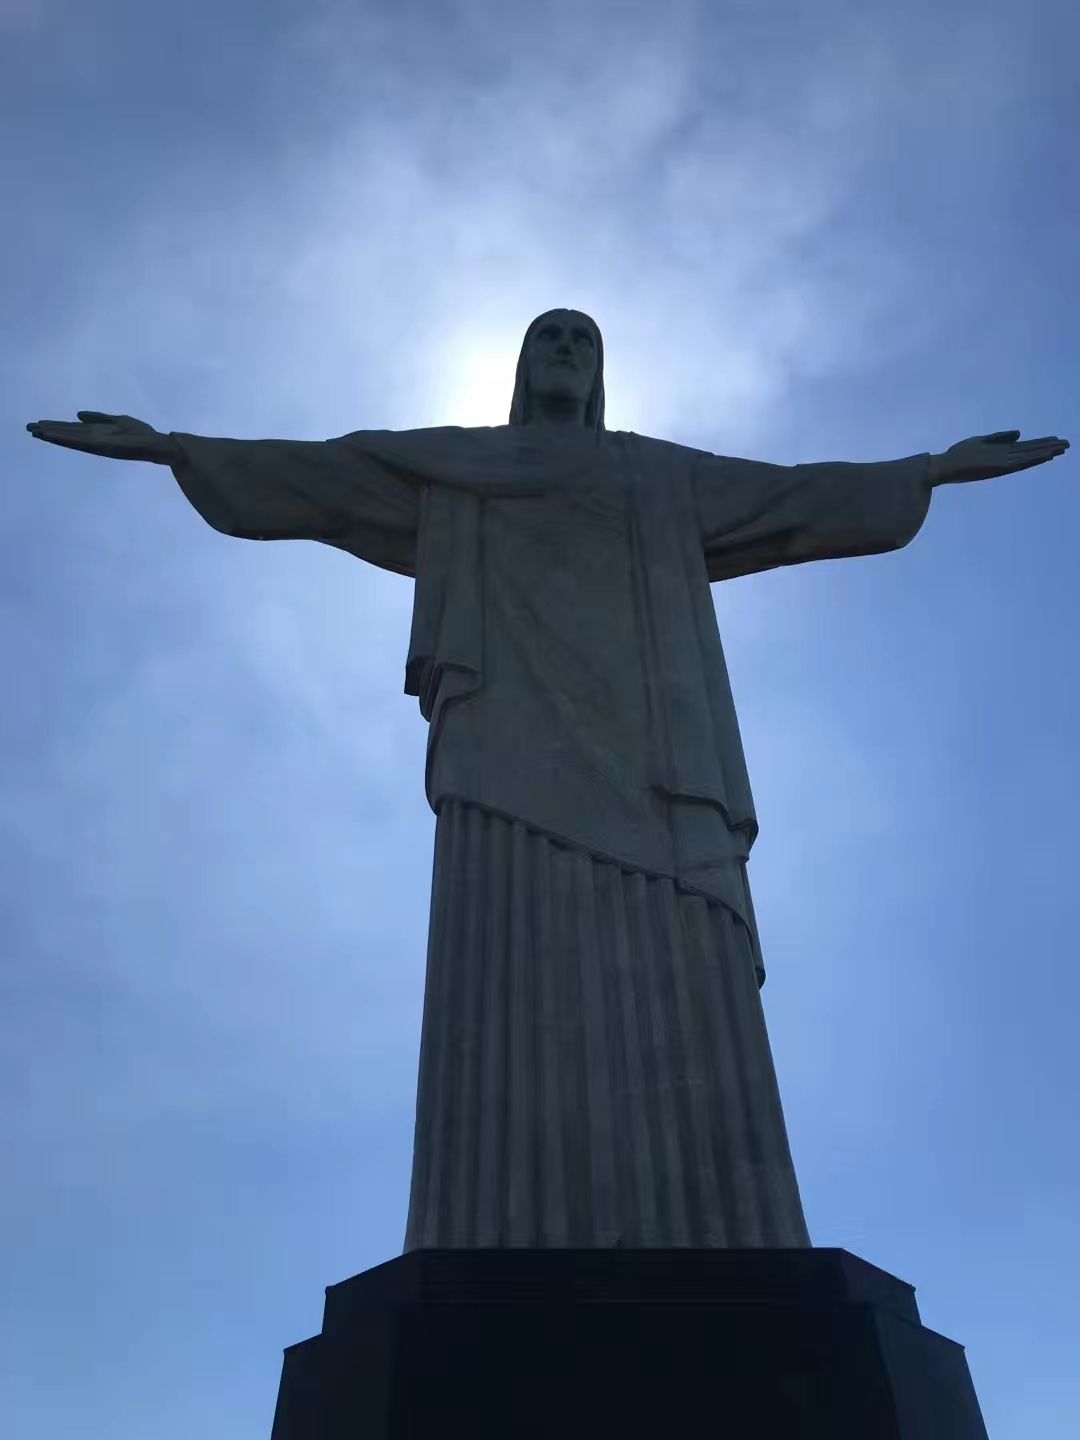 【巴西里约耶稣山摄影图片】巴西里约耶稣山国外摄影_太平洋电脑网摄影部落